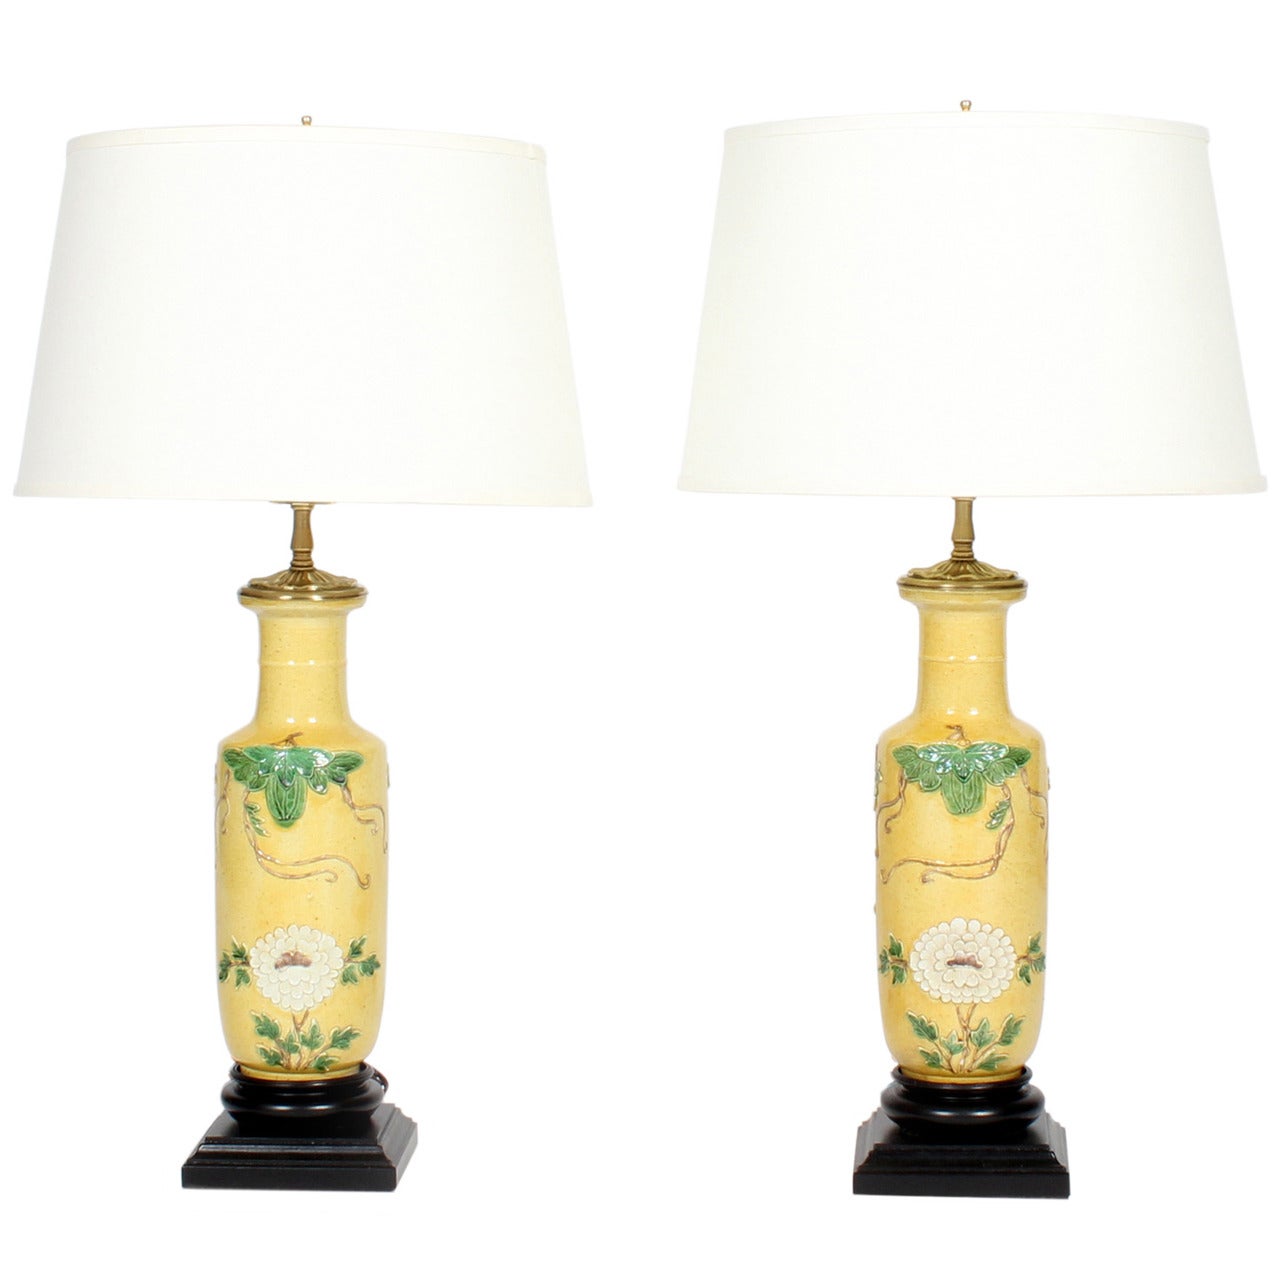 Pair of Chinese Wang Bing Rong Vase Lamps